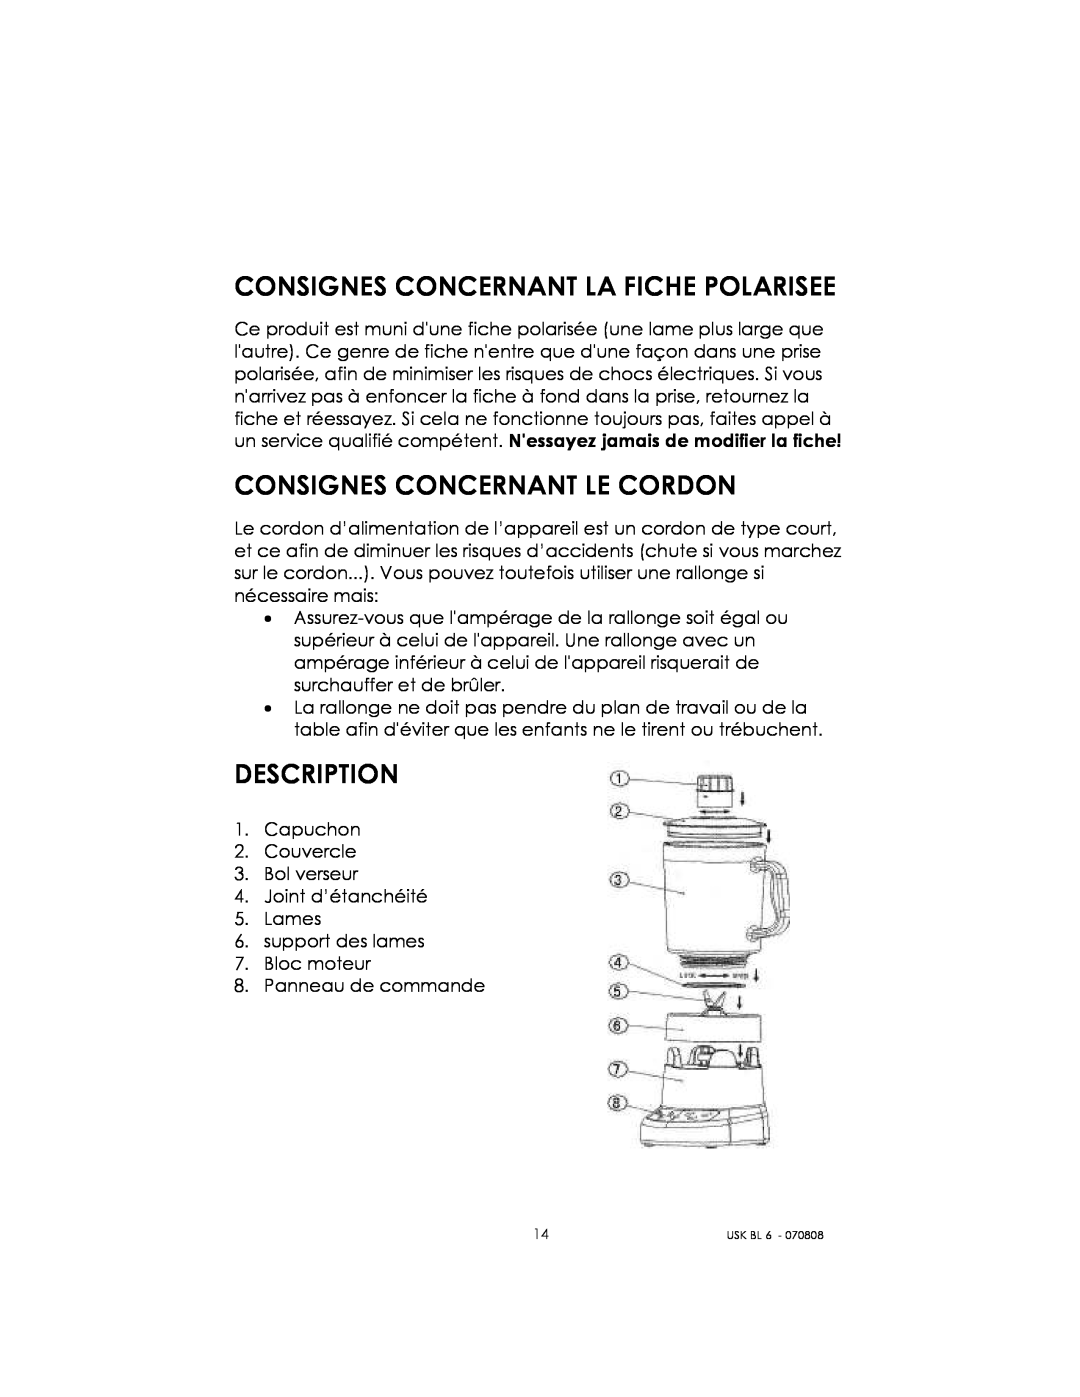 Kalorik USK BL 6 manual Consignes Concernant La Fiche Polarisee, Consignes Concernant Le Cordon, Description 